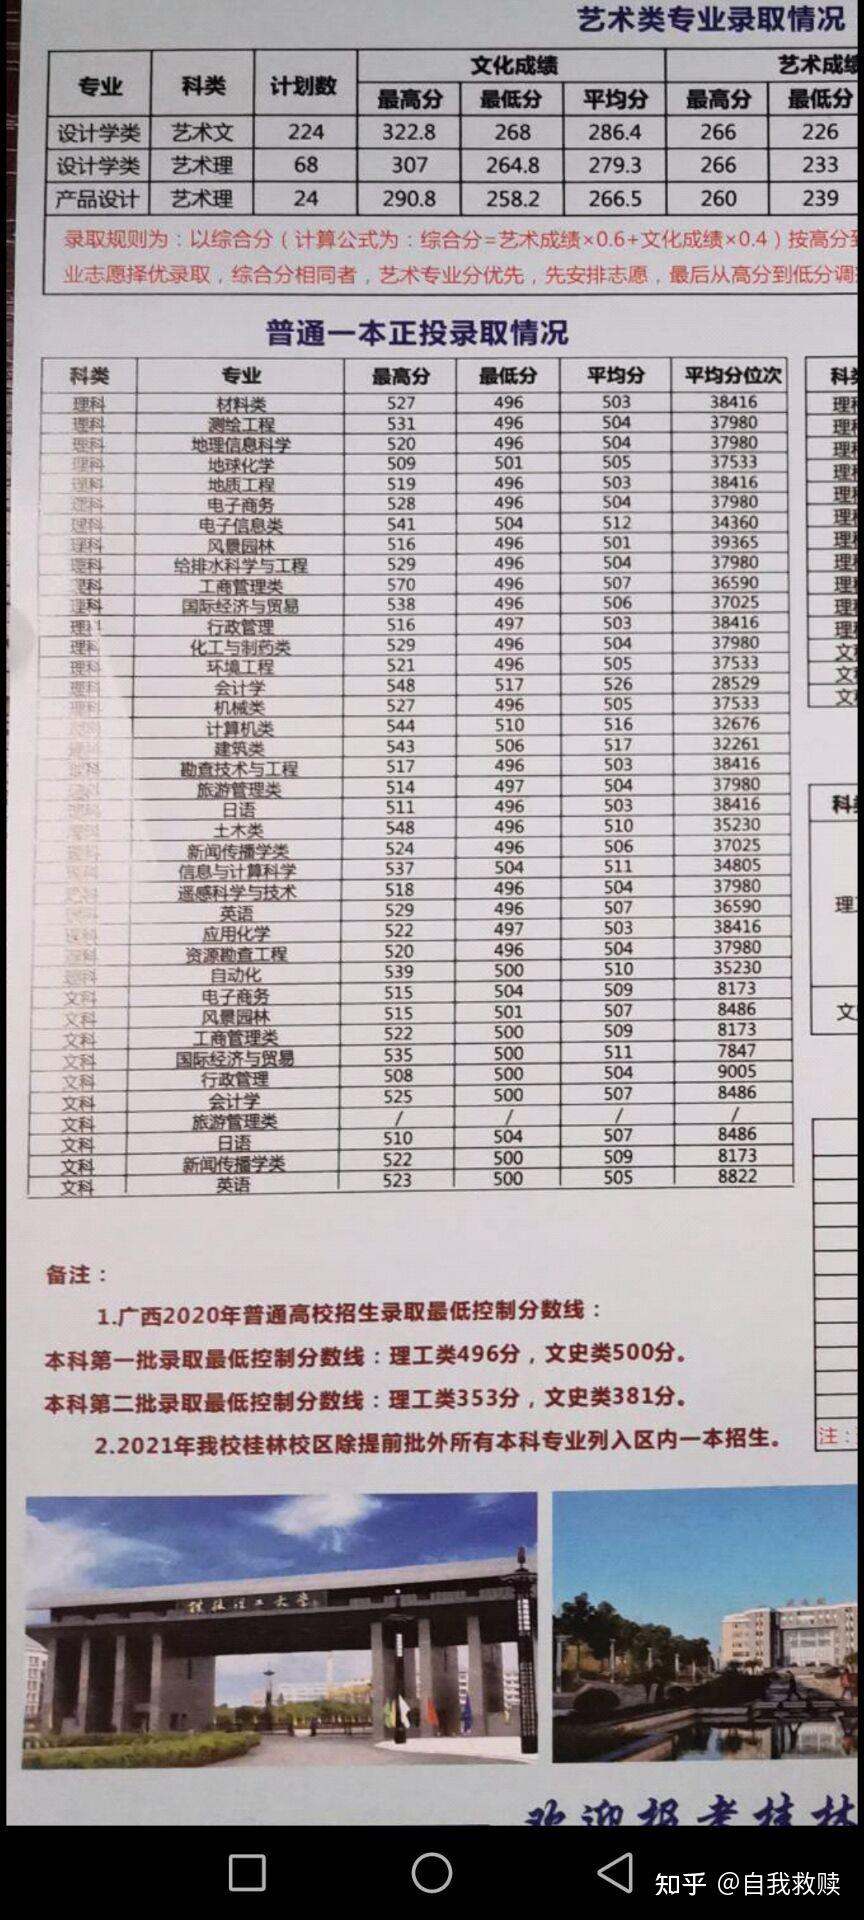 3、广西桂林大学有多少书：桂林有多少所大学？ 